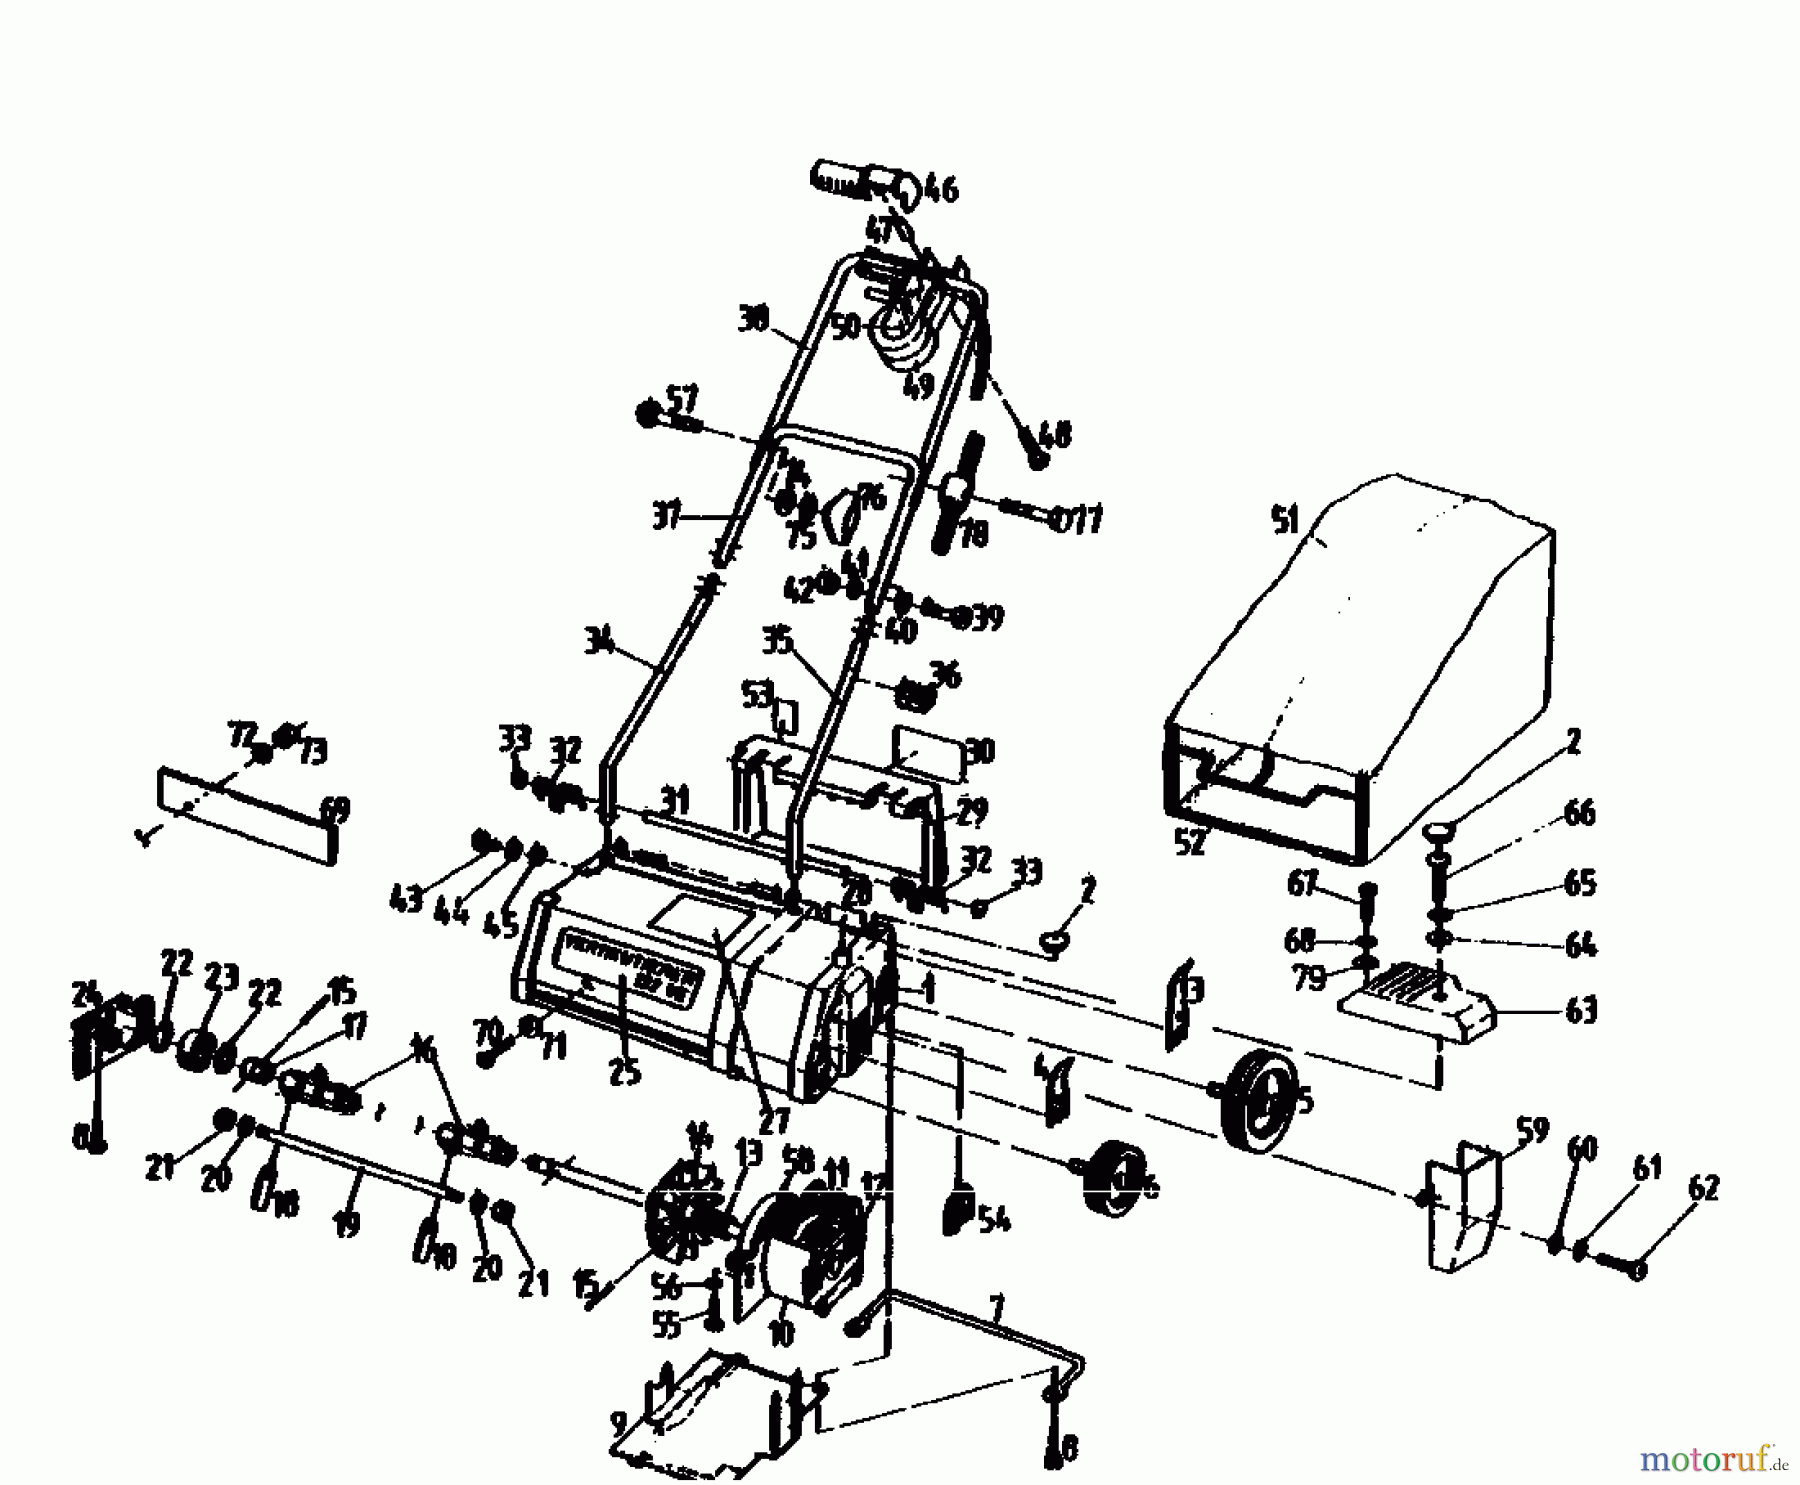  Golf Scarificateur électrique 132 VE 02846.03  (1990) Machine de base